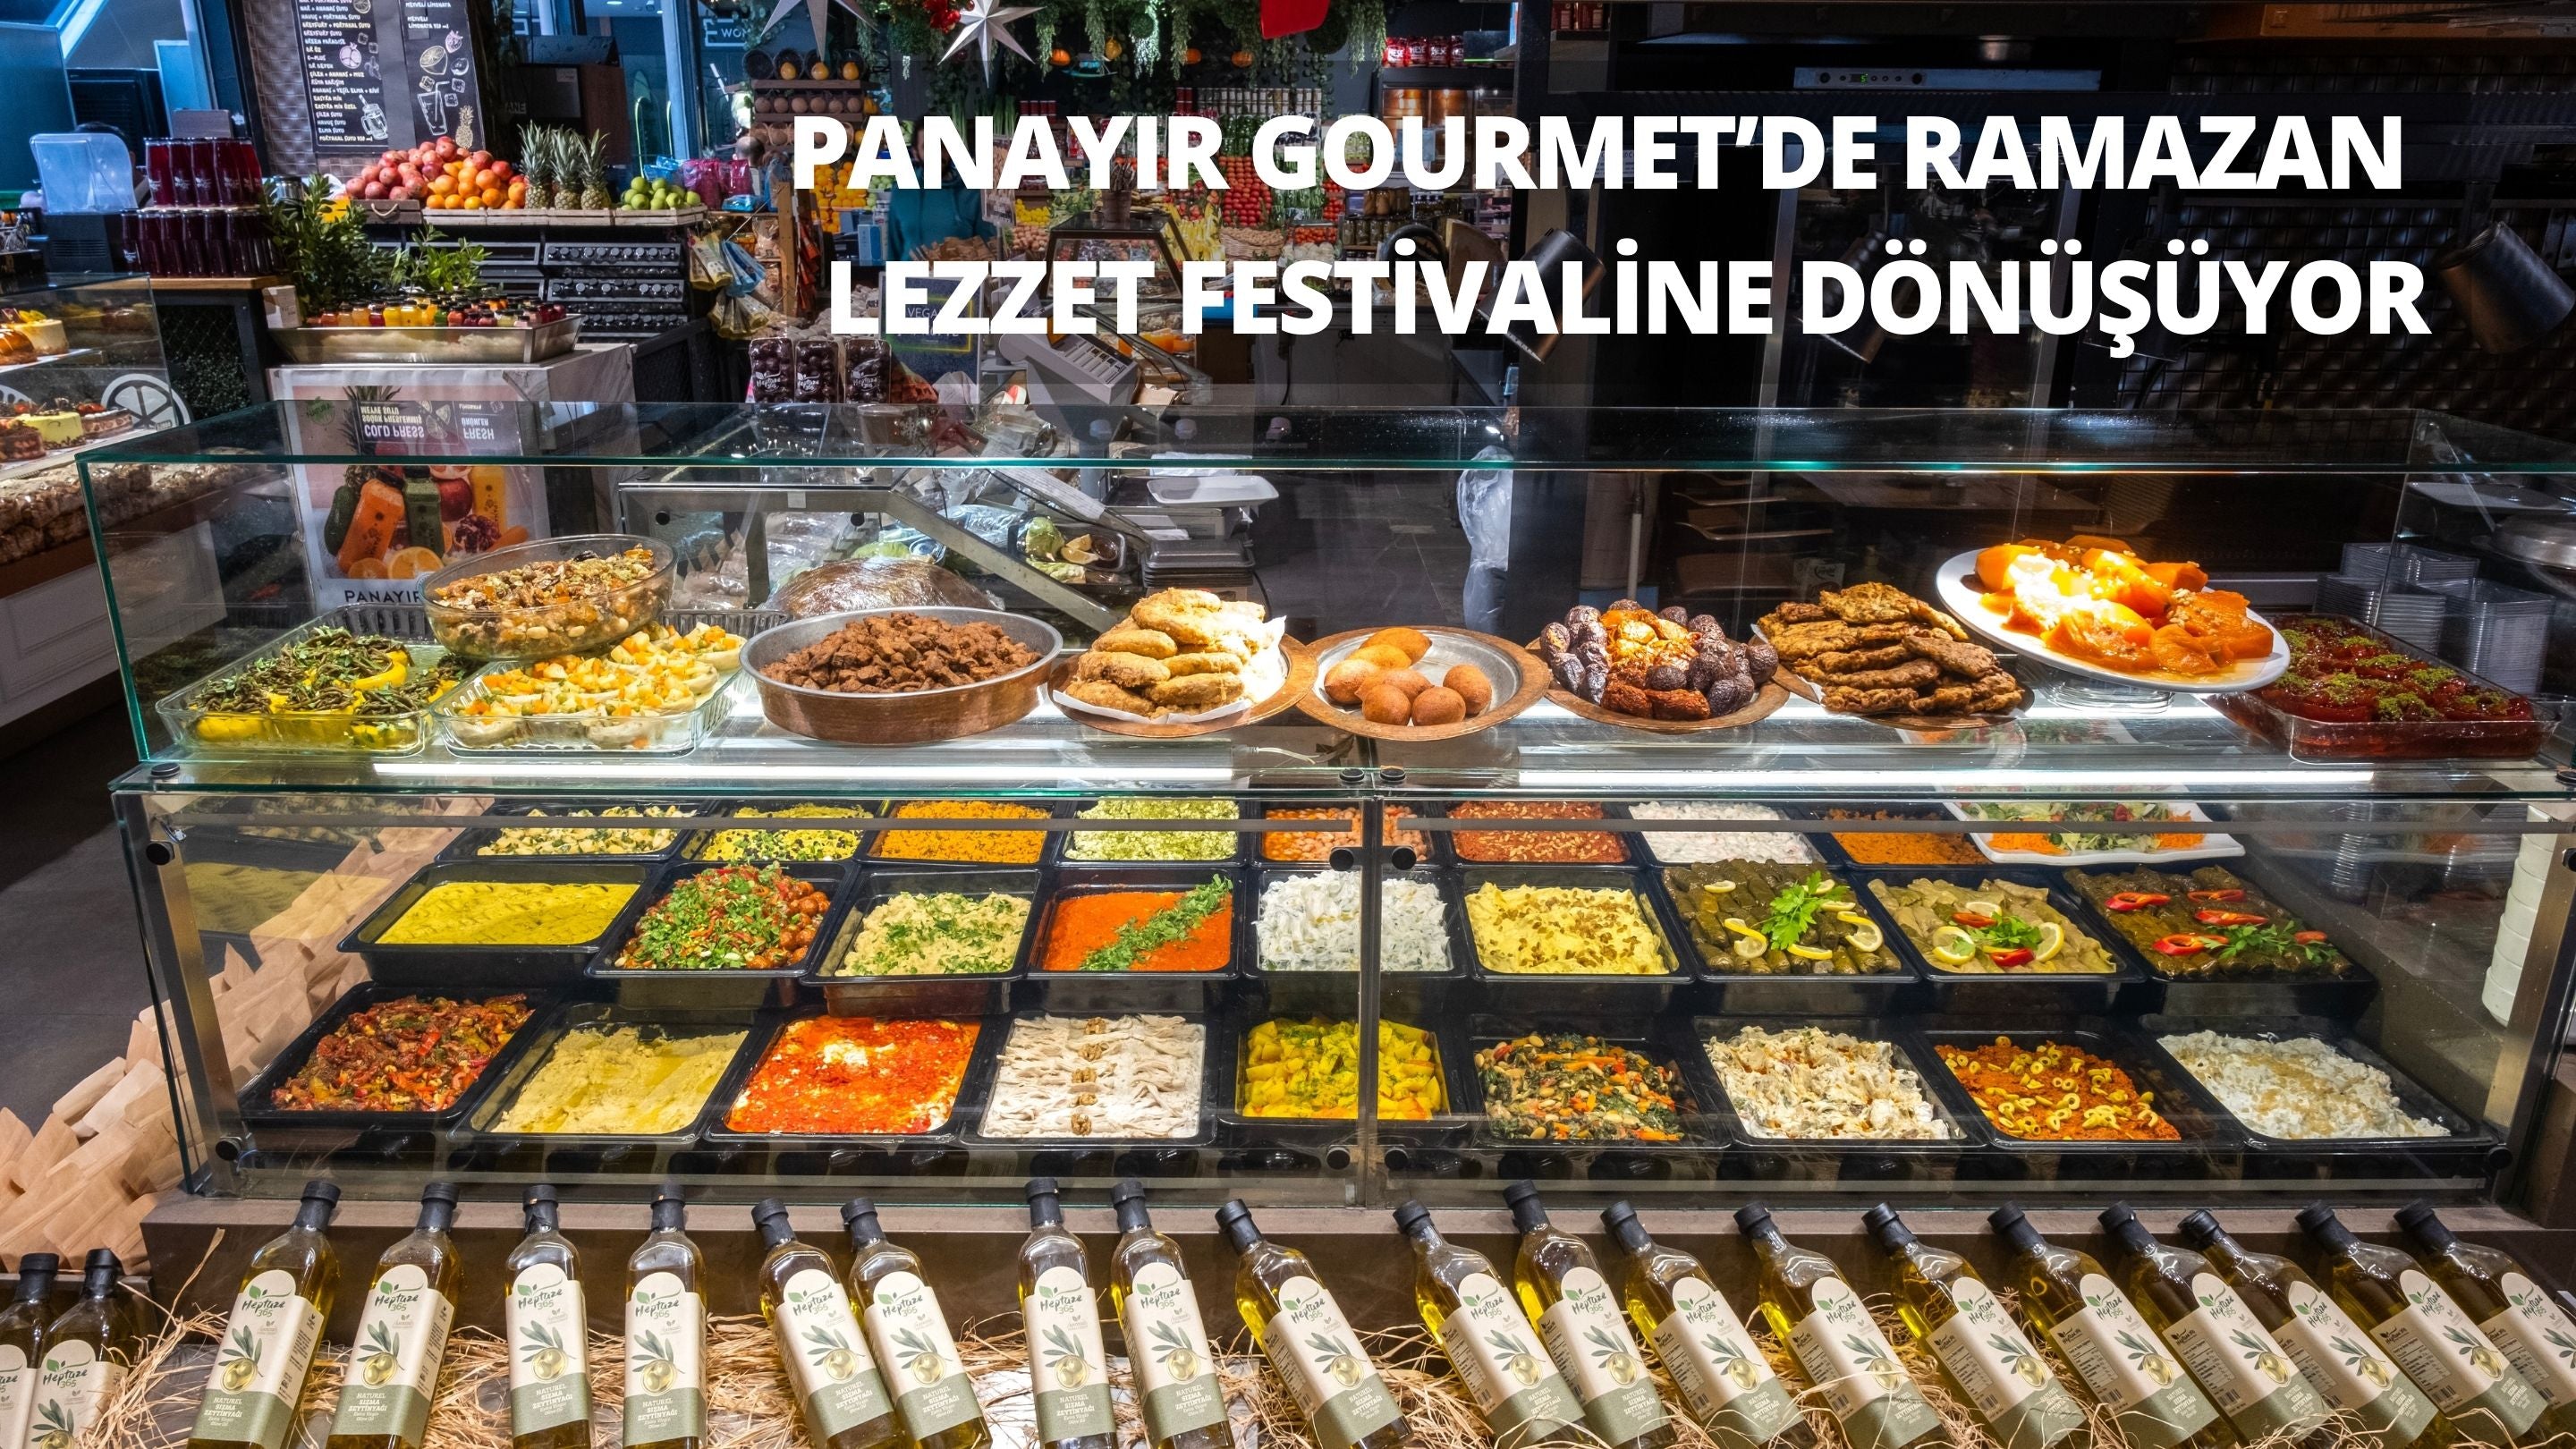 Panayır Gourmet’de Ramazan Lezzet Festivaline Dönüşüyor